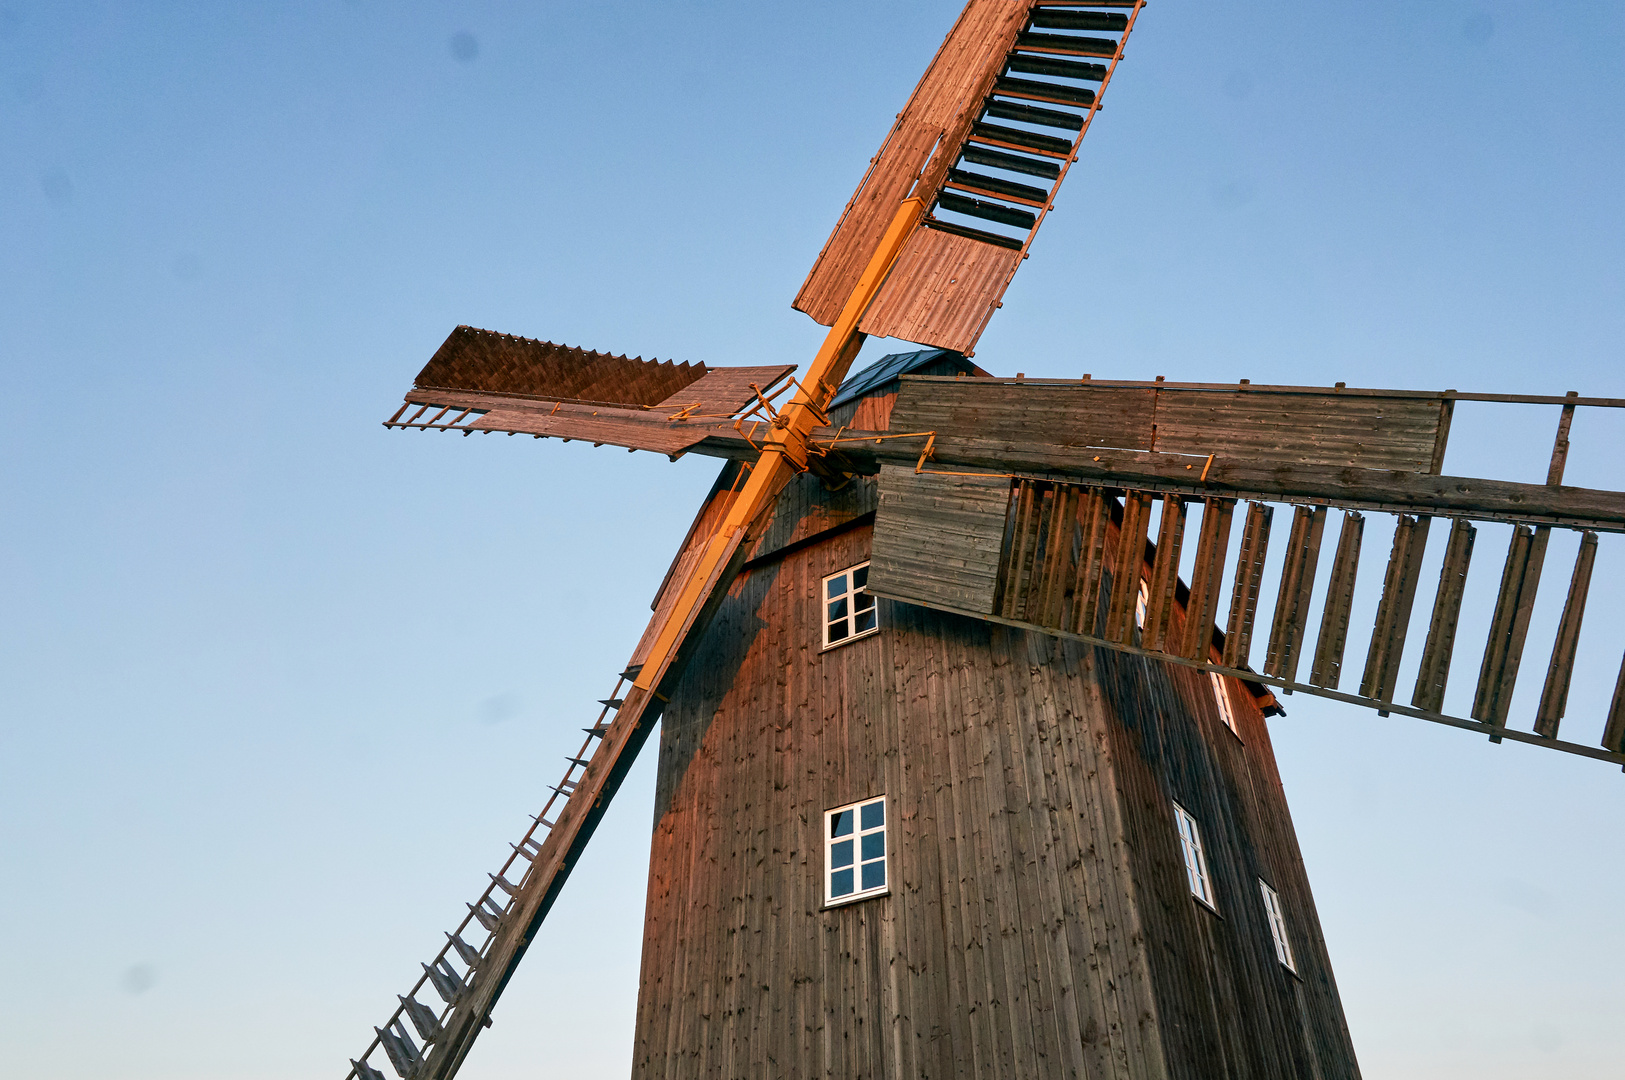 Bockwindmühle im Original wieder aufgebaut